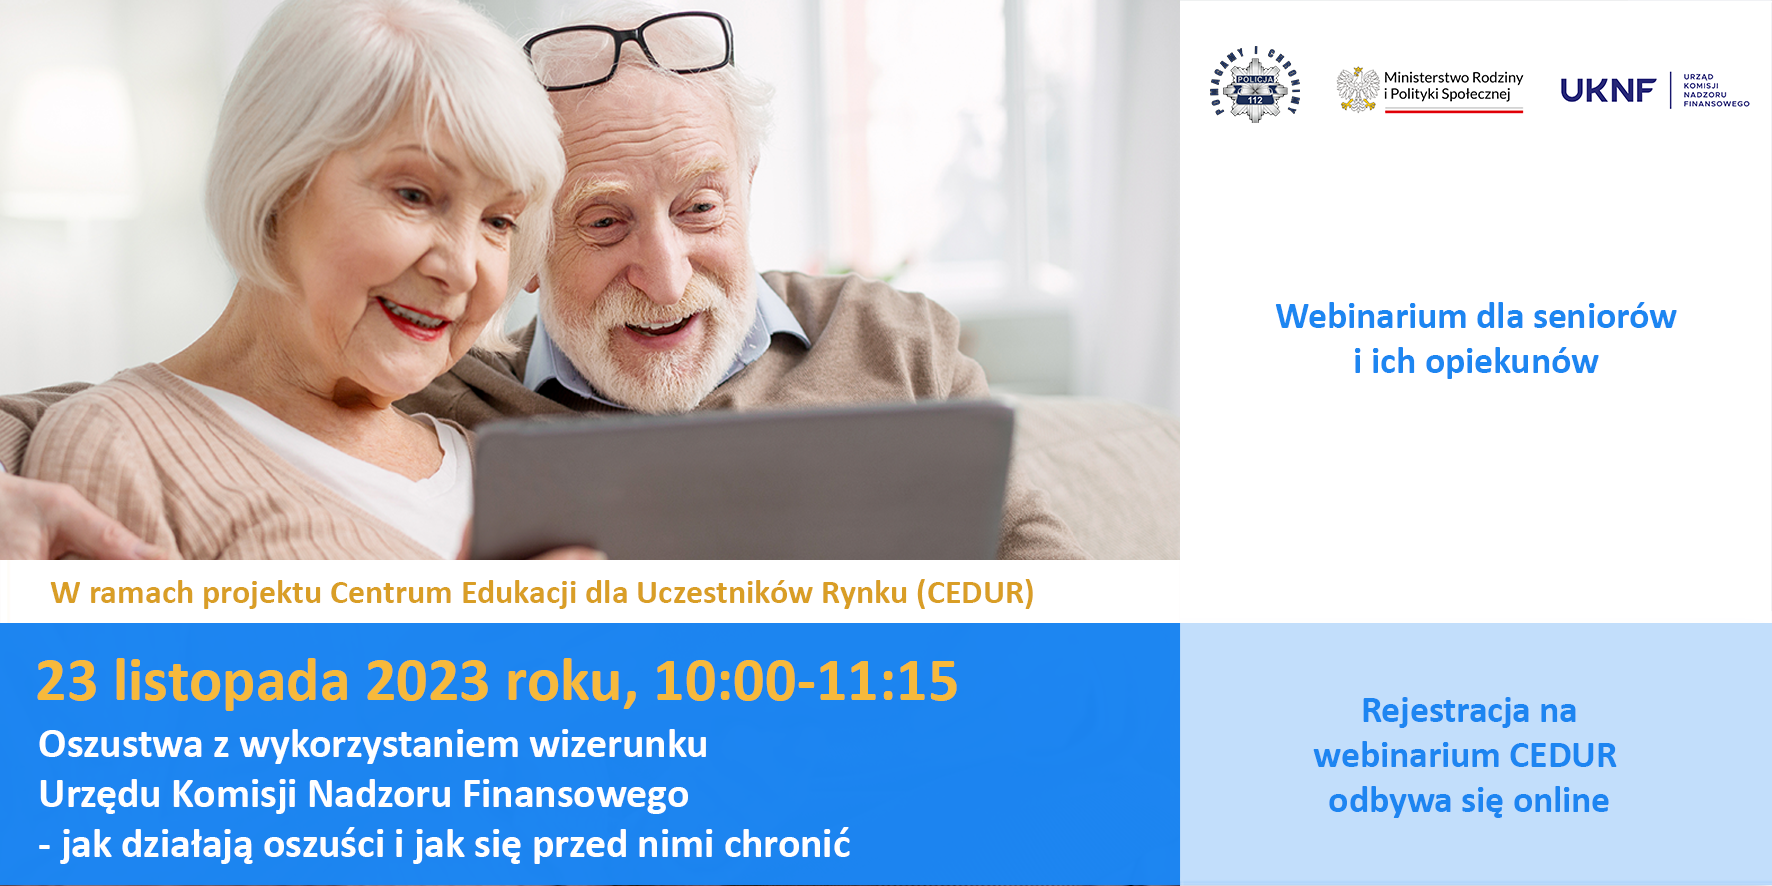 Zaproszenie na webinarium CEDUR dla seniorów i ich opiekunów